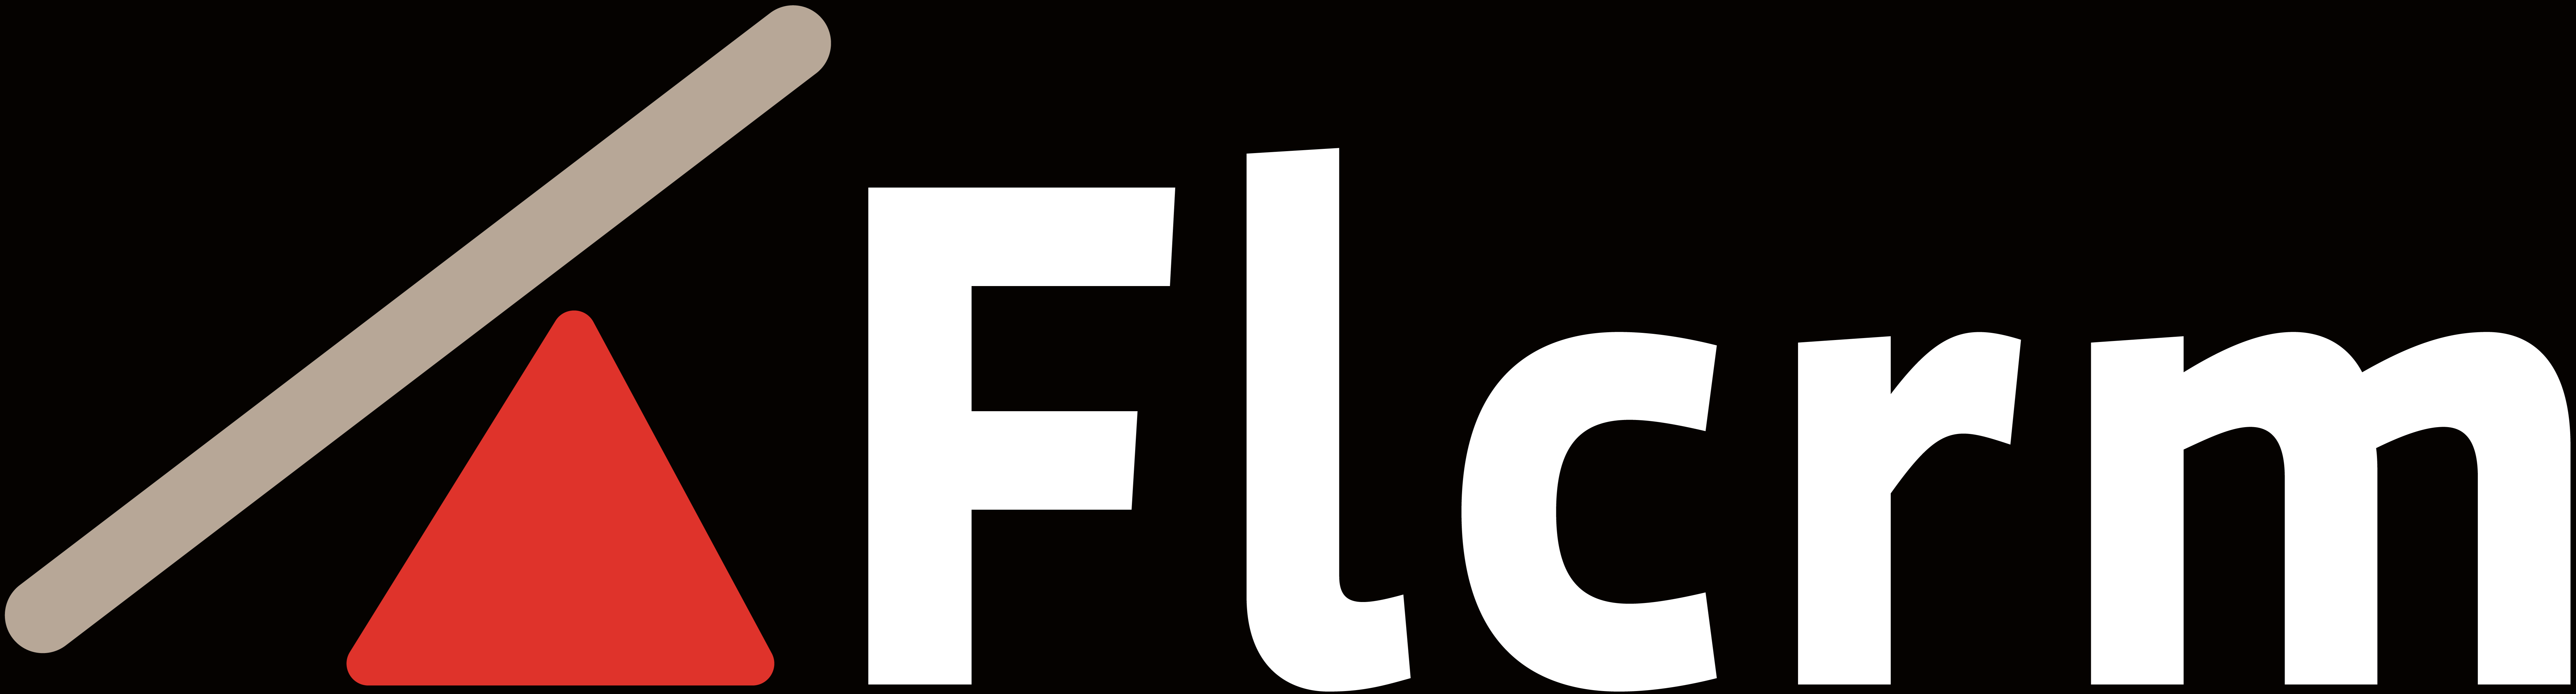 Flcrm logos-Close crop